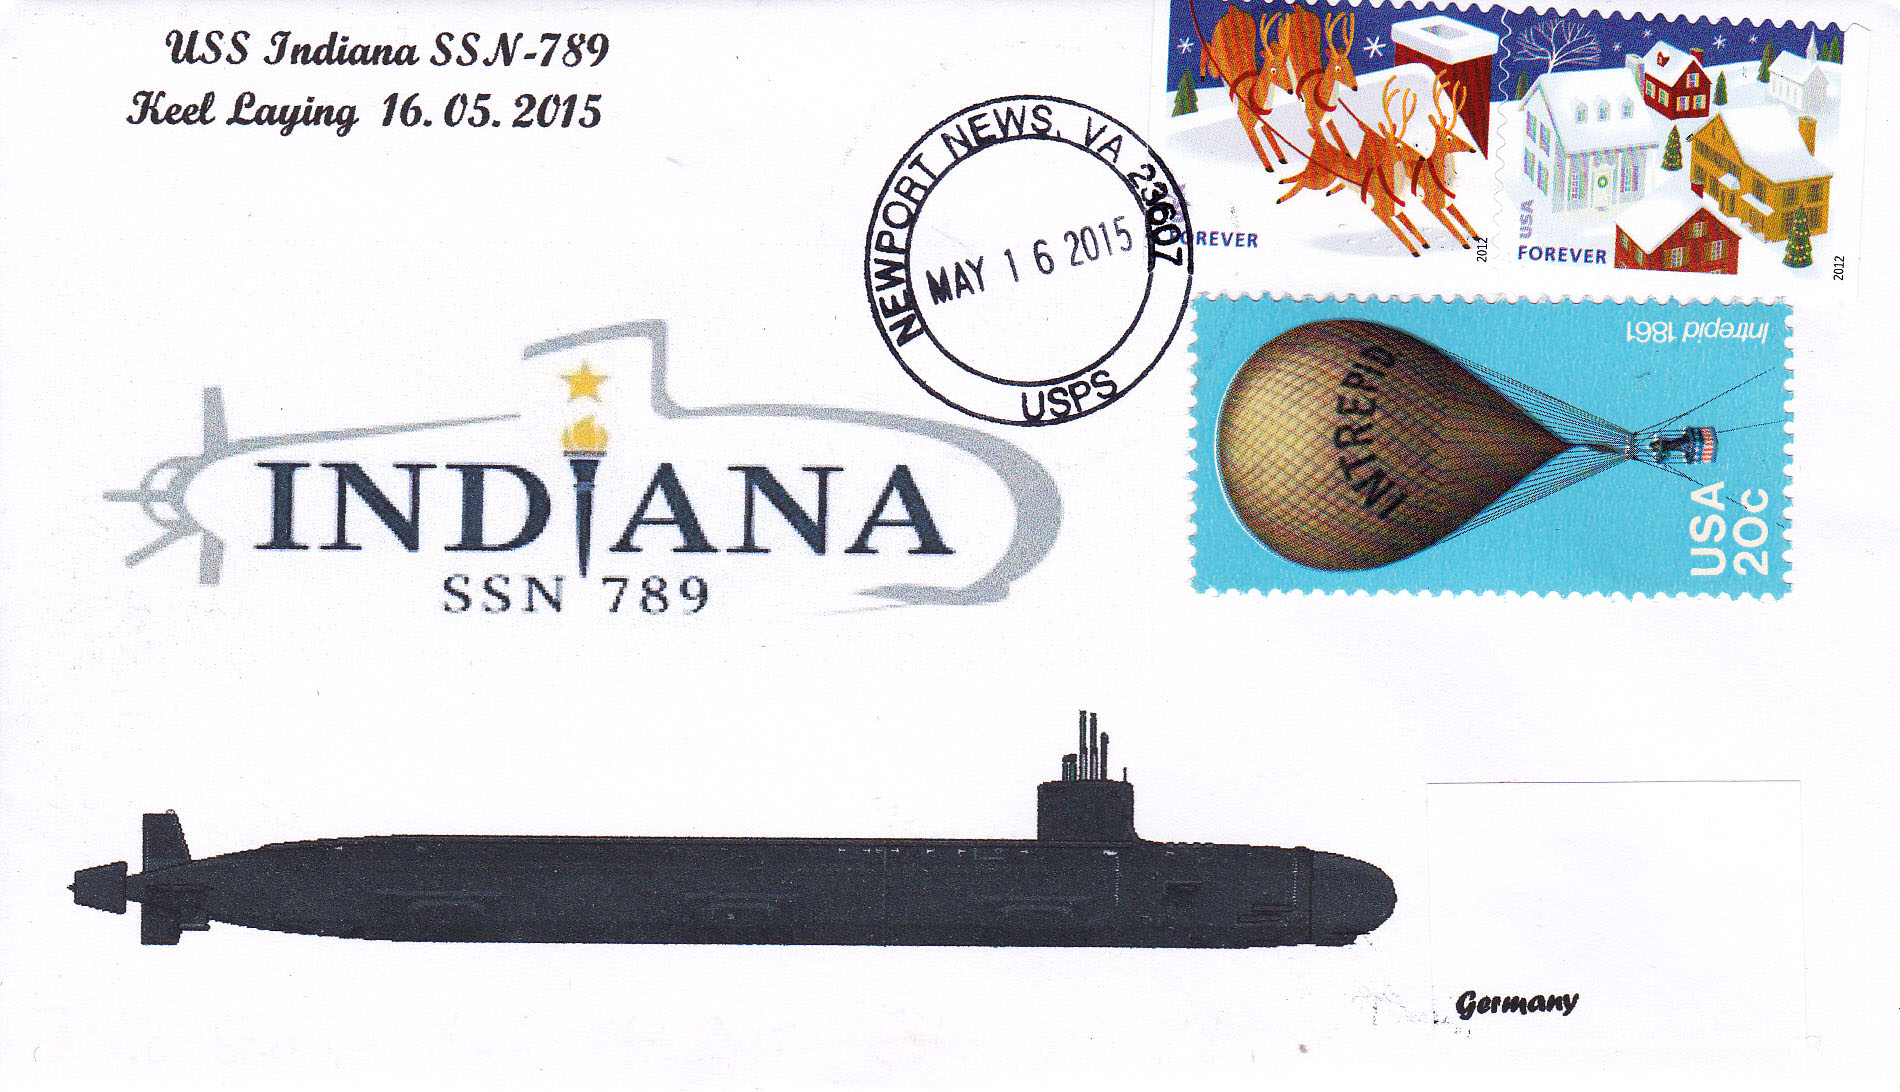 Beleg USS INDIANA SSN-789 Keel Laying Ceremony von Heinz Grasse